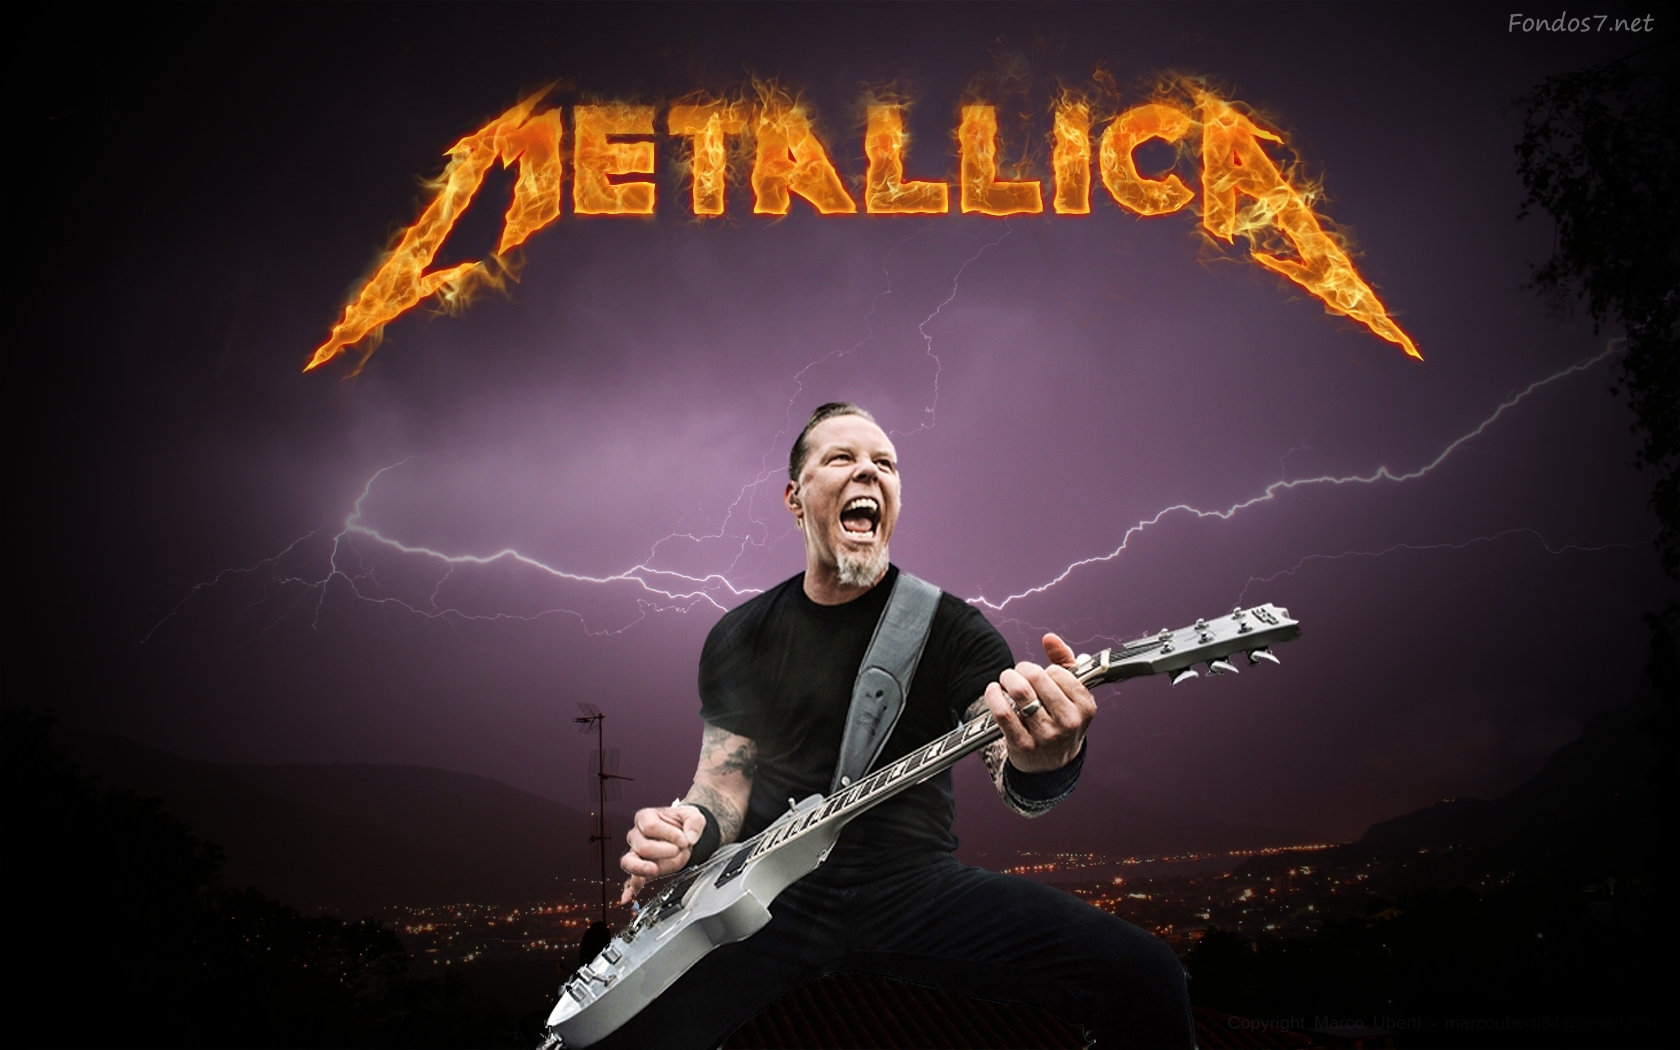 Descargar Fondos De Pantalla Metallica Rock HD Widescreen Gratis